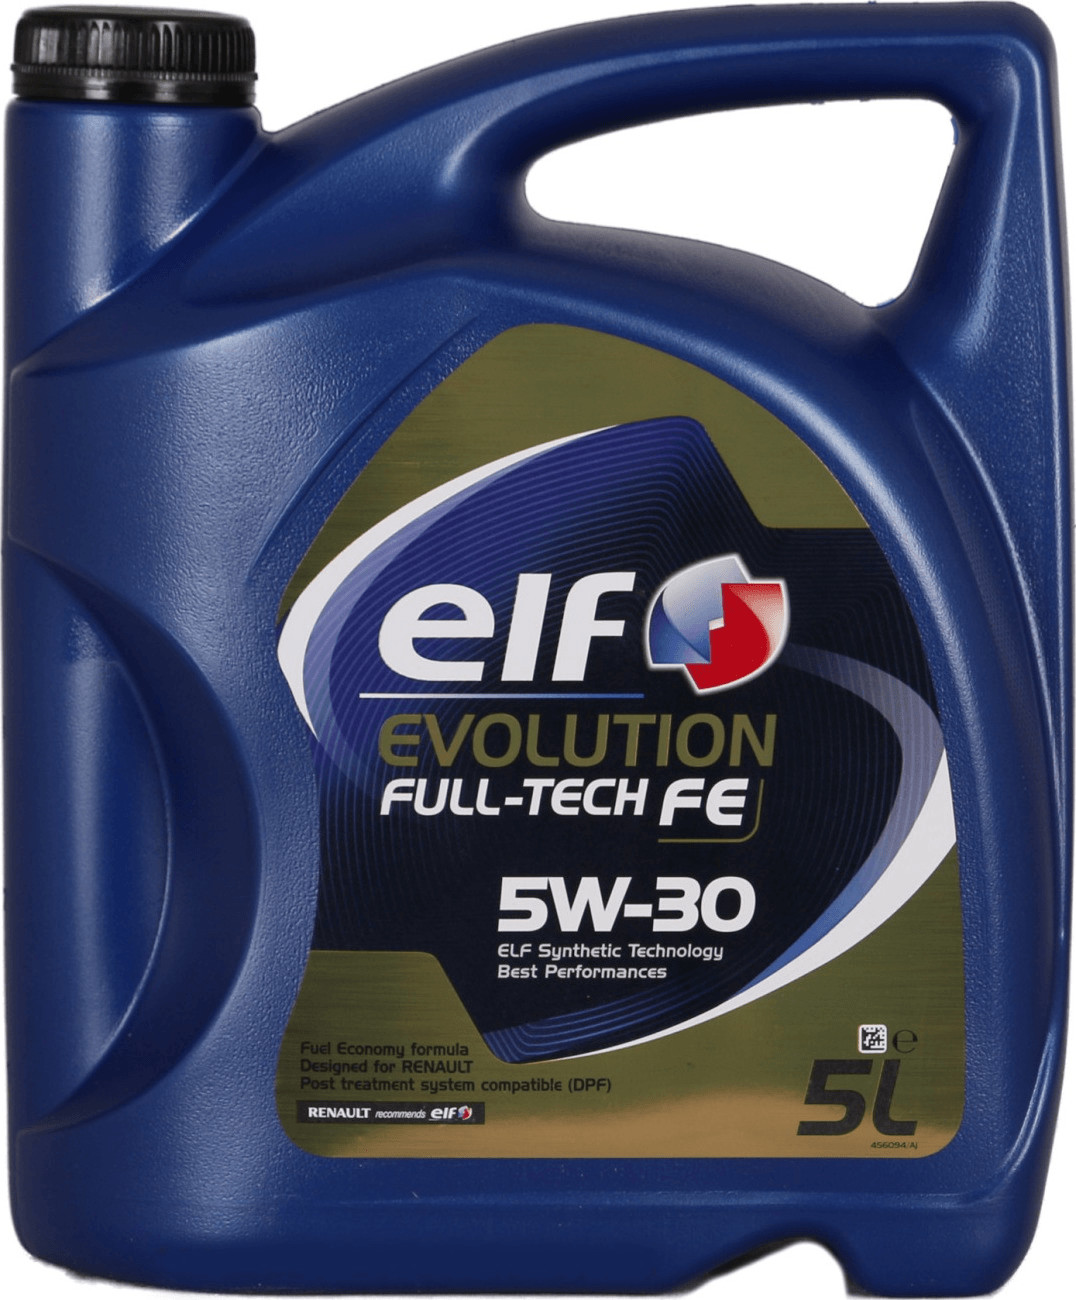 Elf Evolution Full-Tech FE 5W-30 (5 l) ab 38,59 €